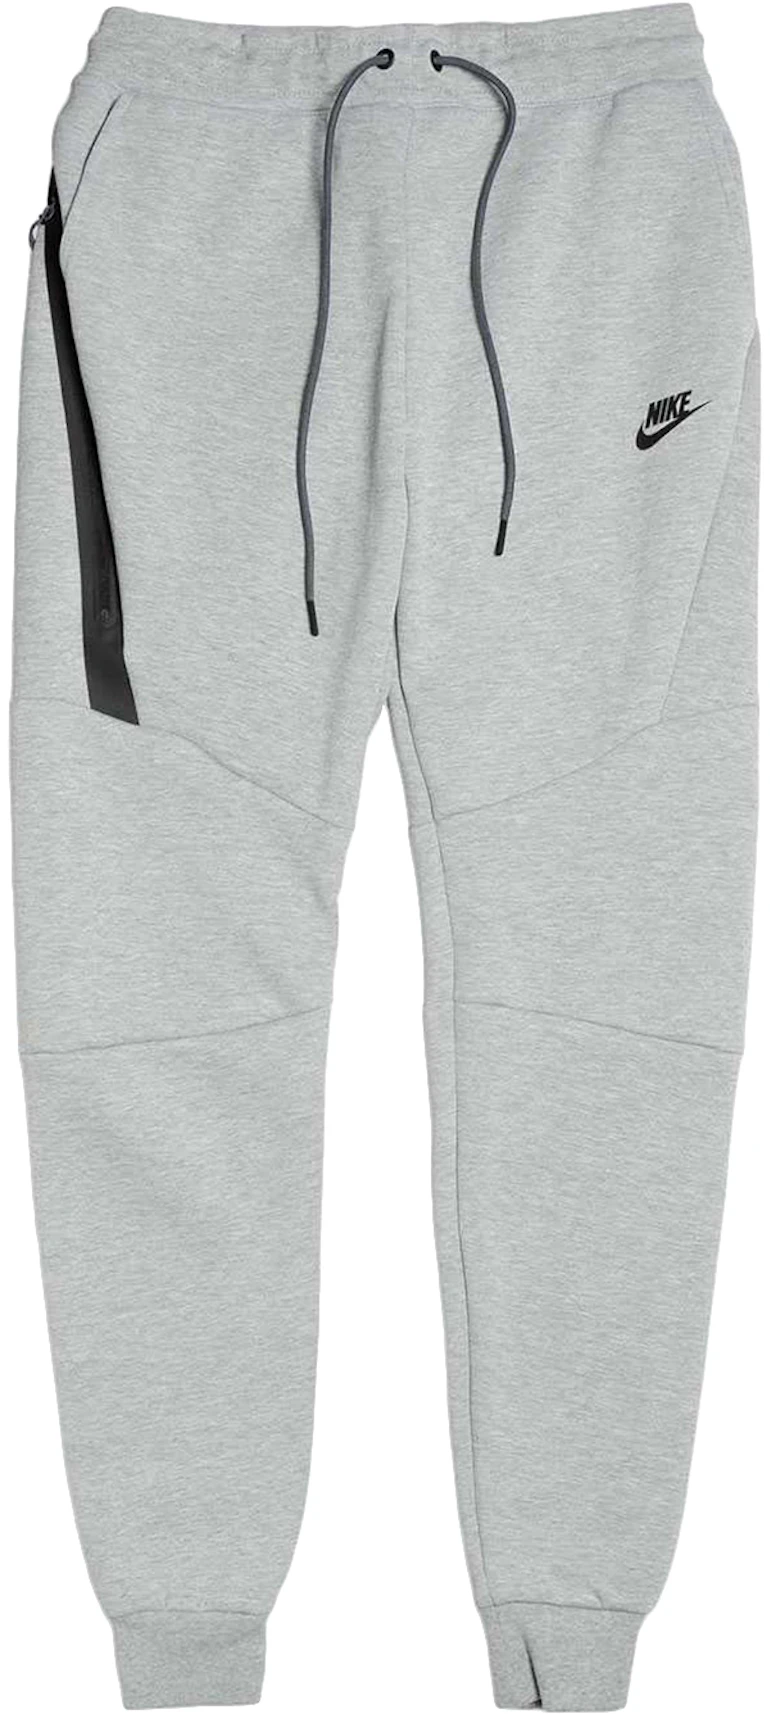 Nike Sportswear Tech Pant Grey/Black - US